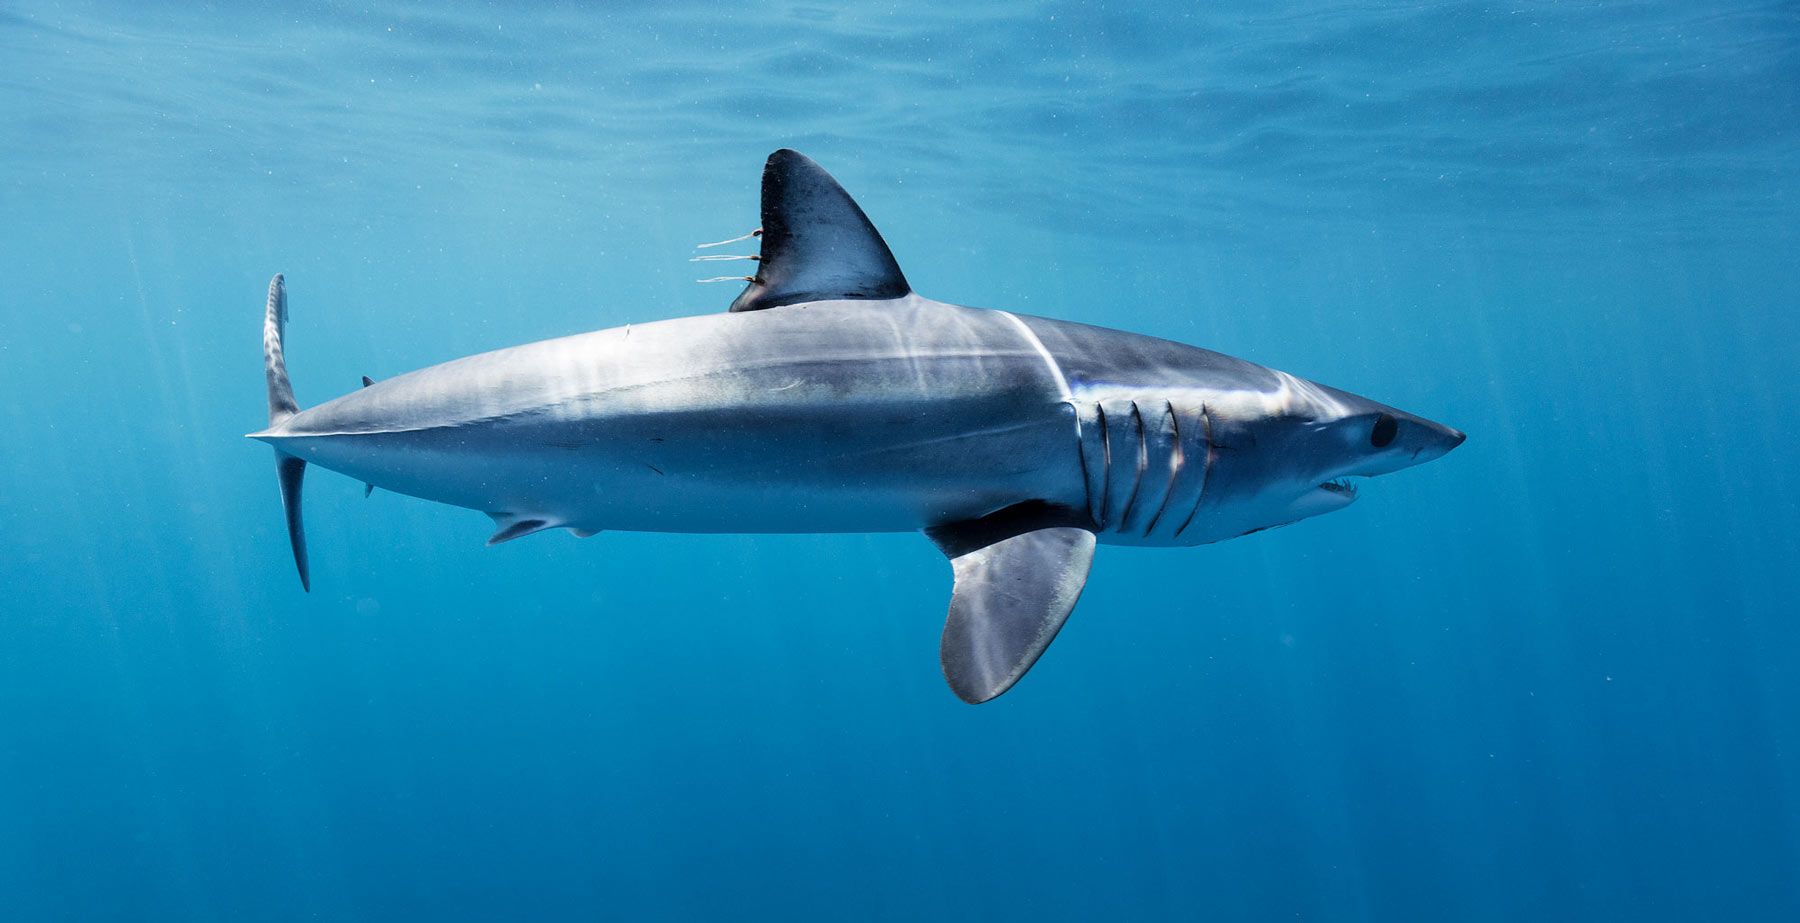 Mako Sharks fastest sharks innautilusliveaboards.com